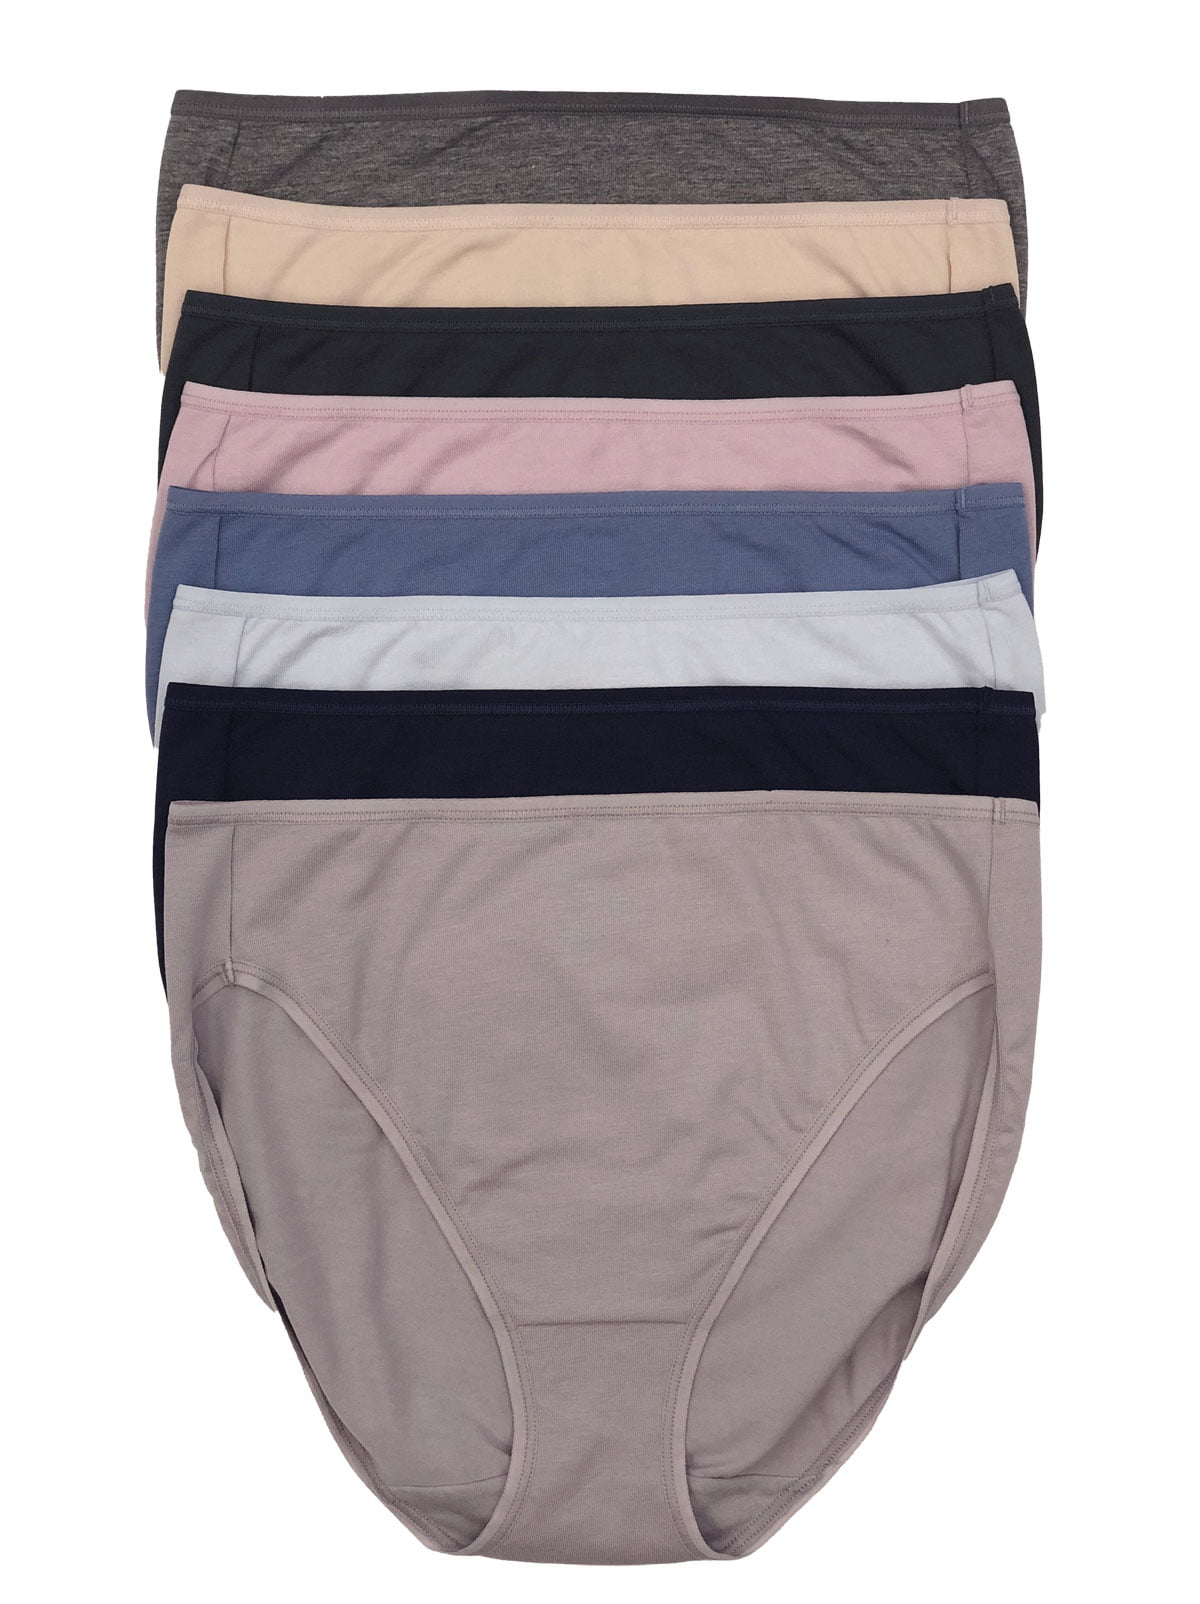 Felina Cotton Modal Hi Cut Panties - Sexy Lingerie Panties for Women -  Underwear for Women 8-Pack (Midsummer Essentials, Medium) 